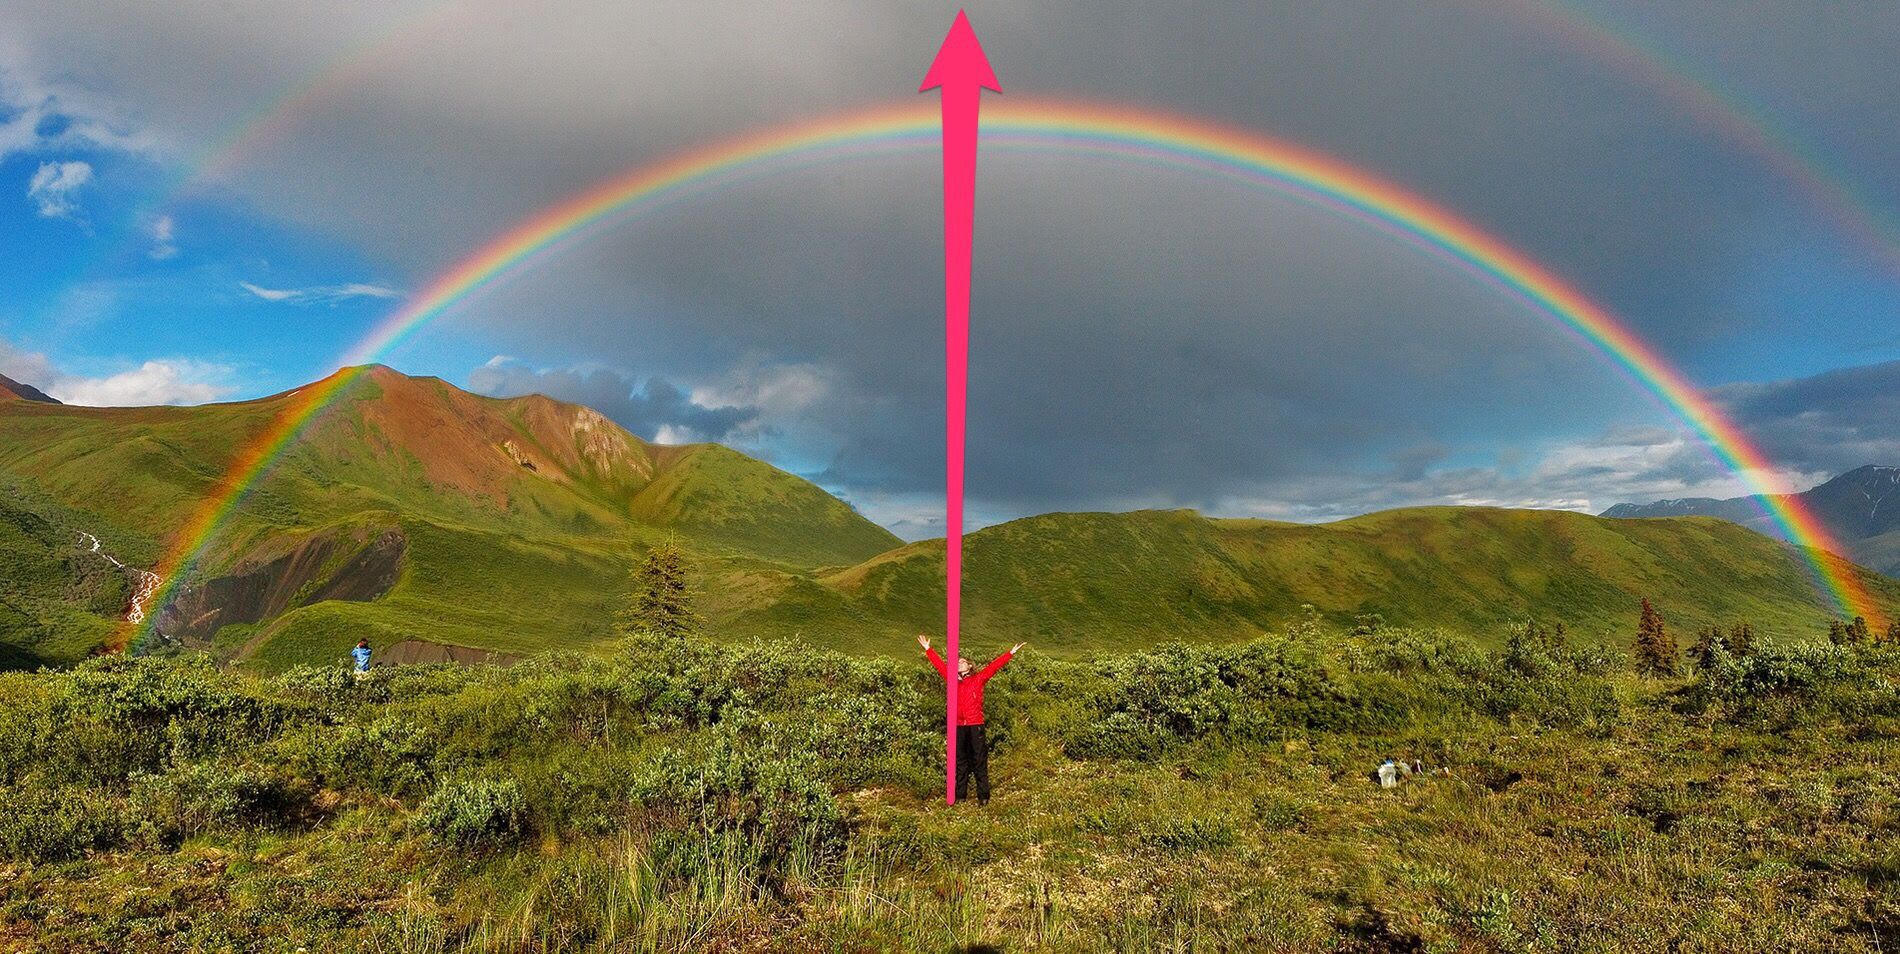 【寻牧之旅】彩虹为证：弯向天空的弓